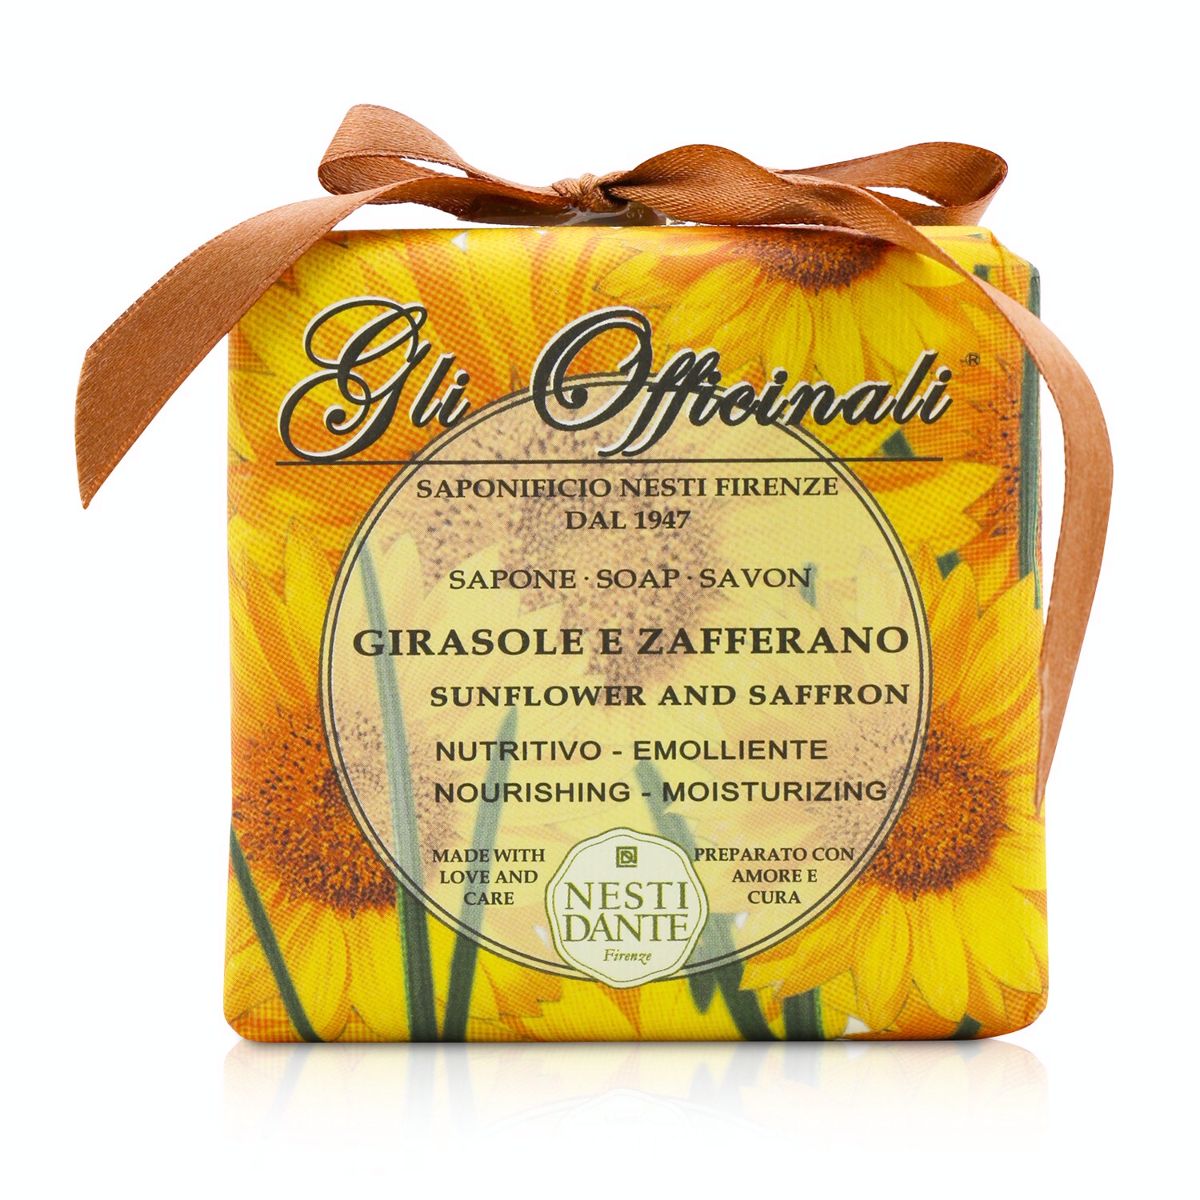 Gli Officinali Soap - Sunflower  Zafferano - Nourishing  Moisturizing Nesti Dante Image